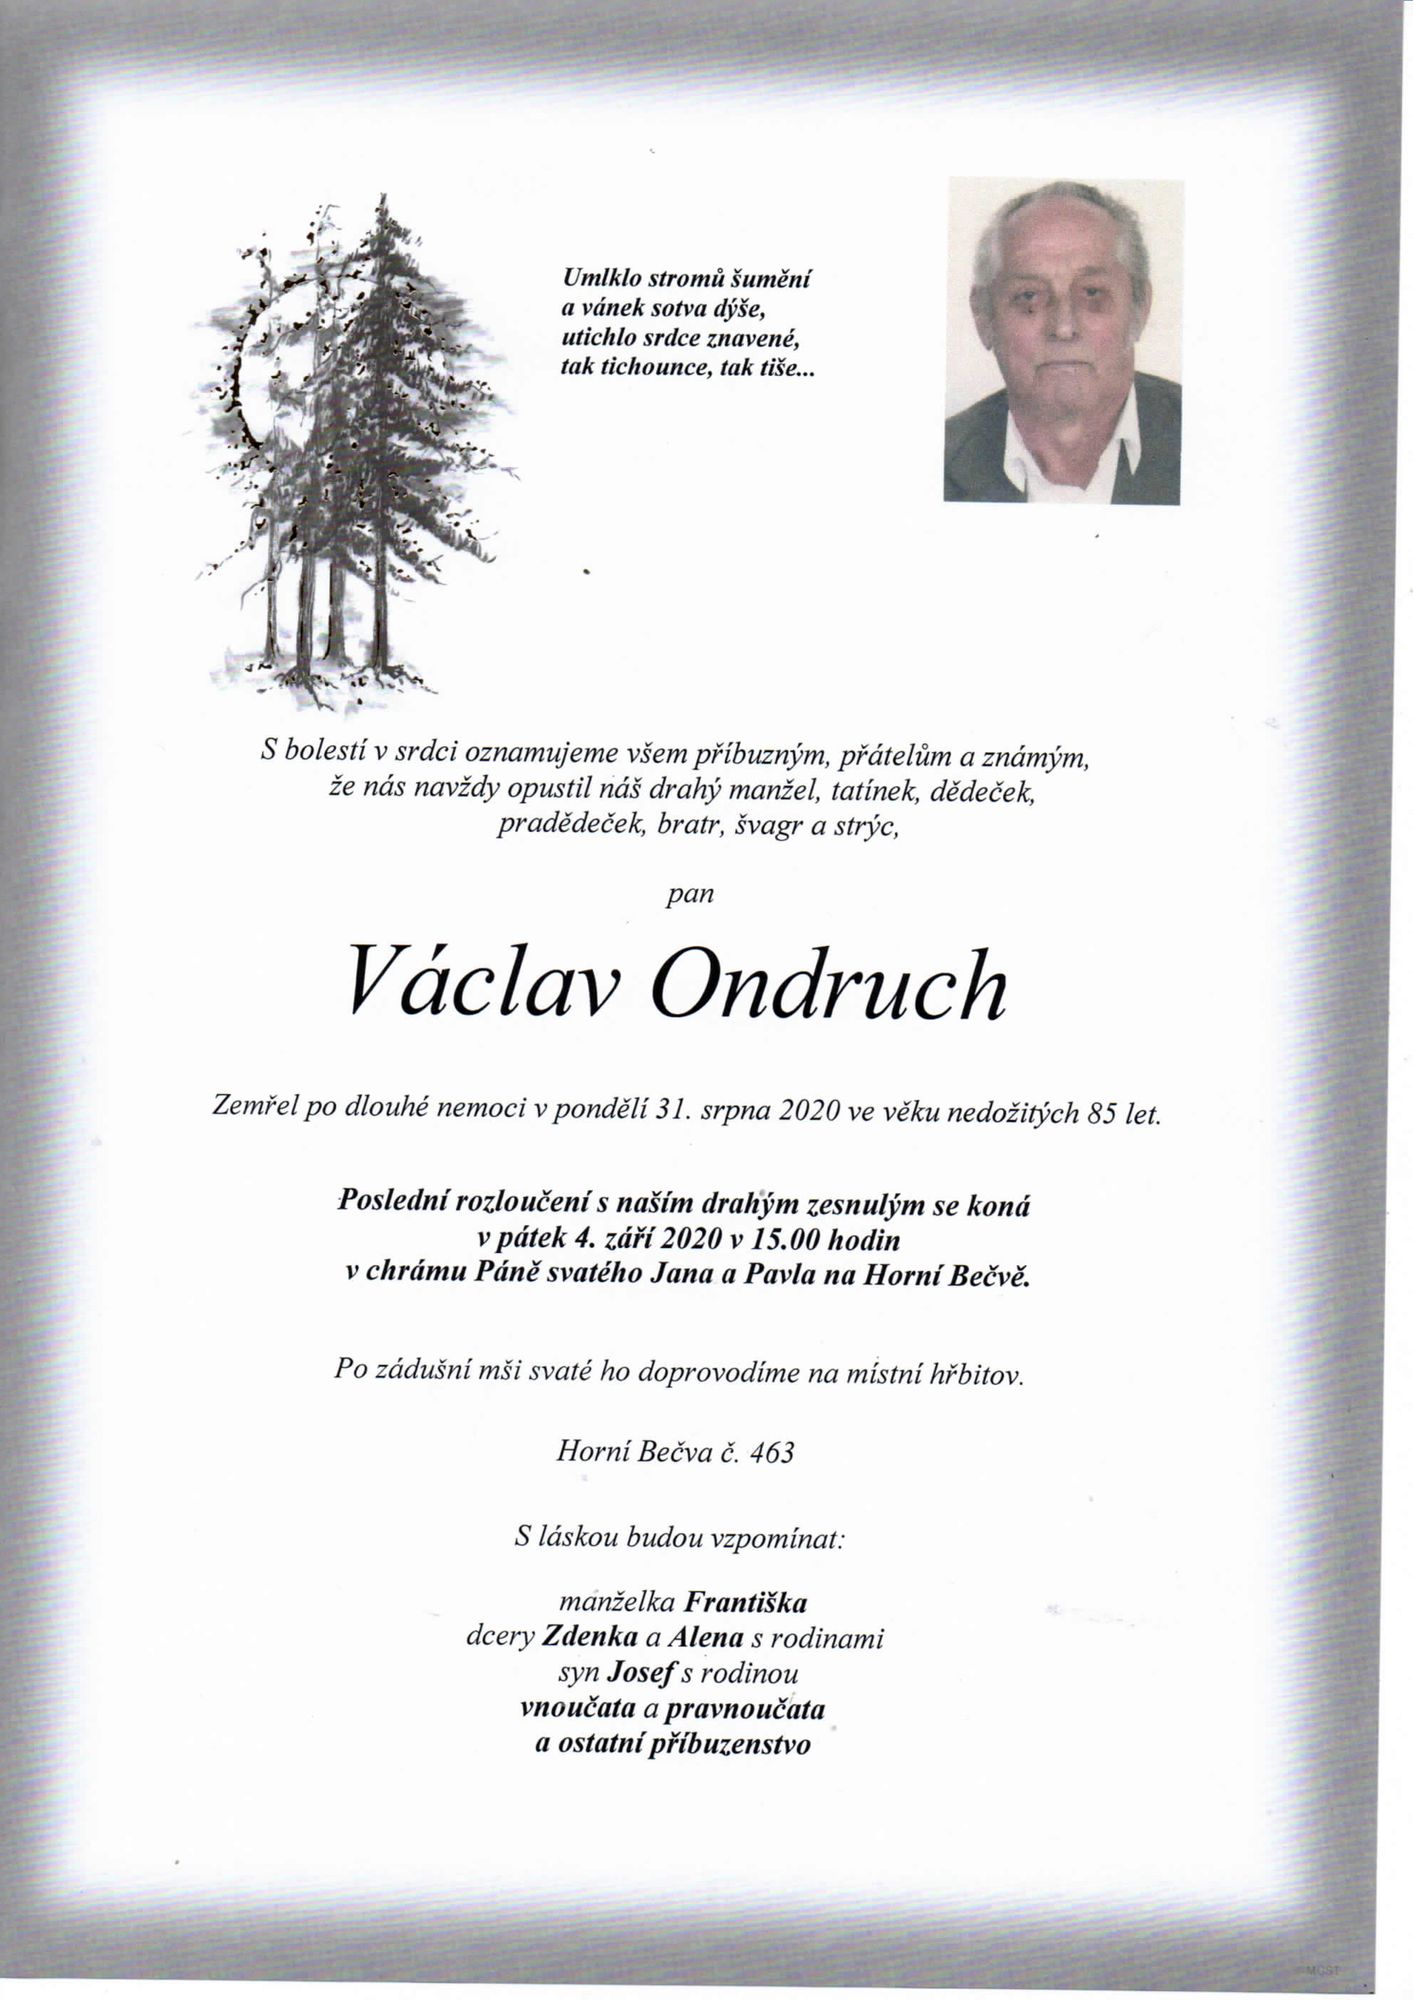 Václav Ondruch